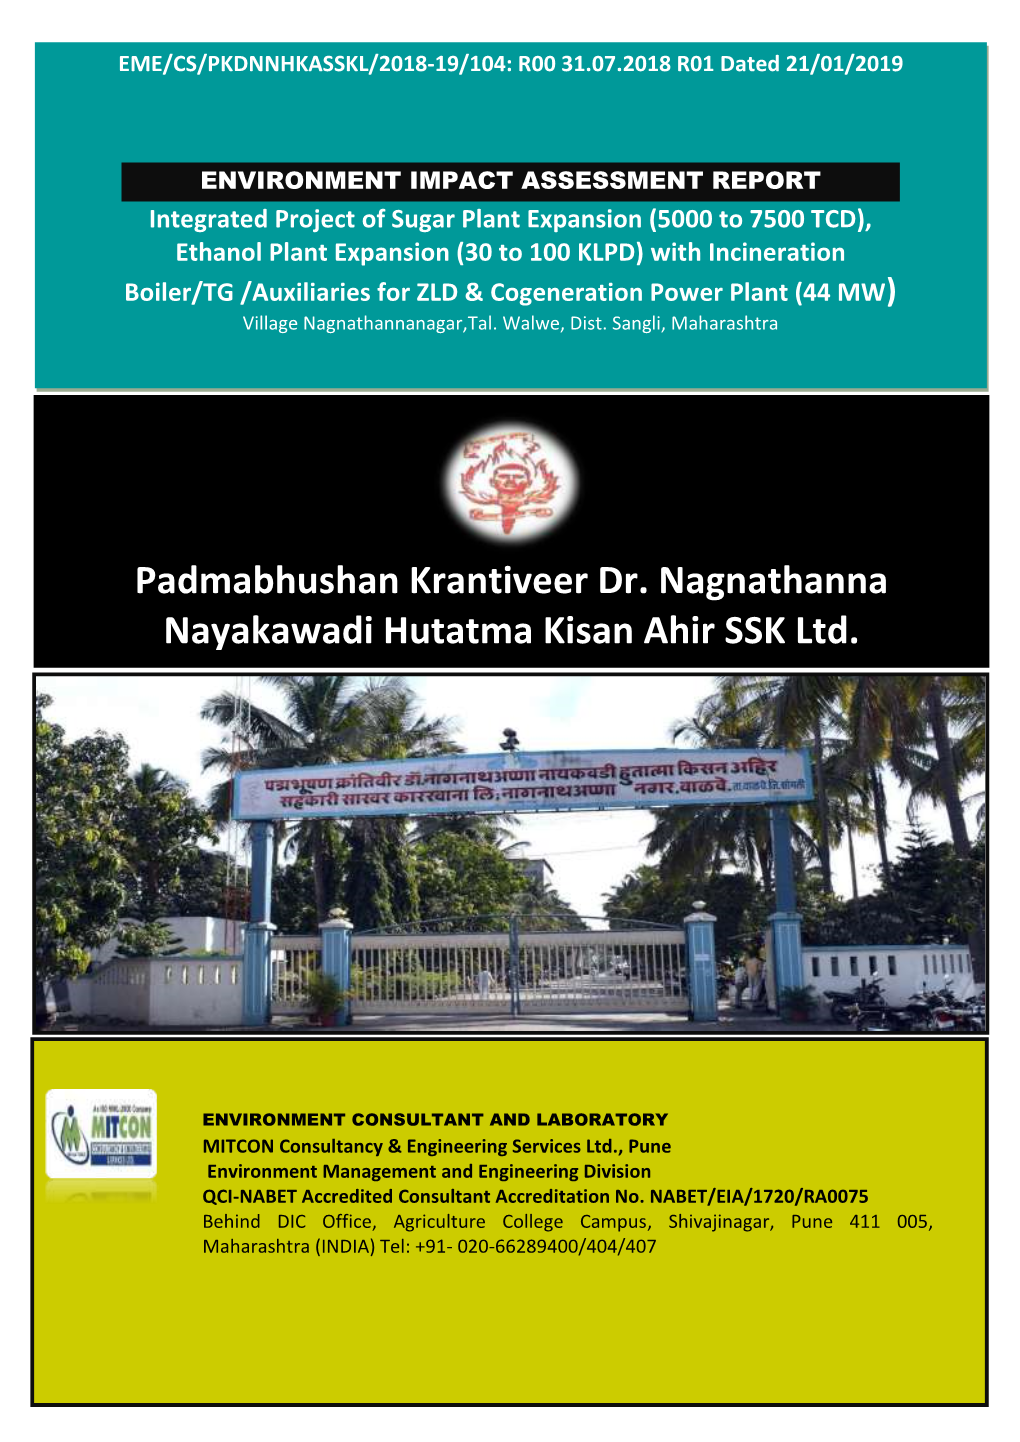 Padmabhushan Krantiveer Dr. Nagnathanna Nayakawadi Hutatma Kisan Ahir SSK Ltd